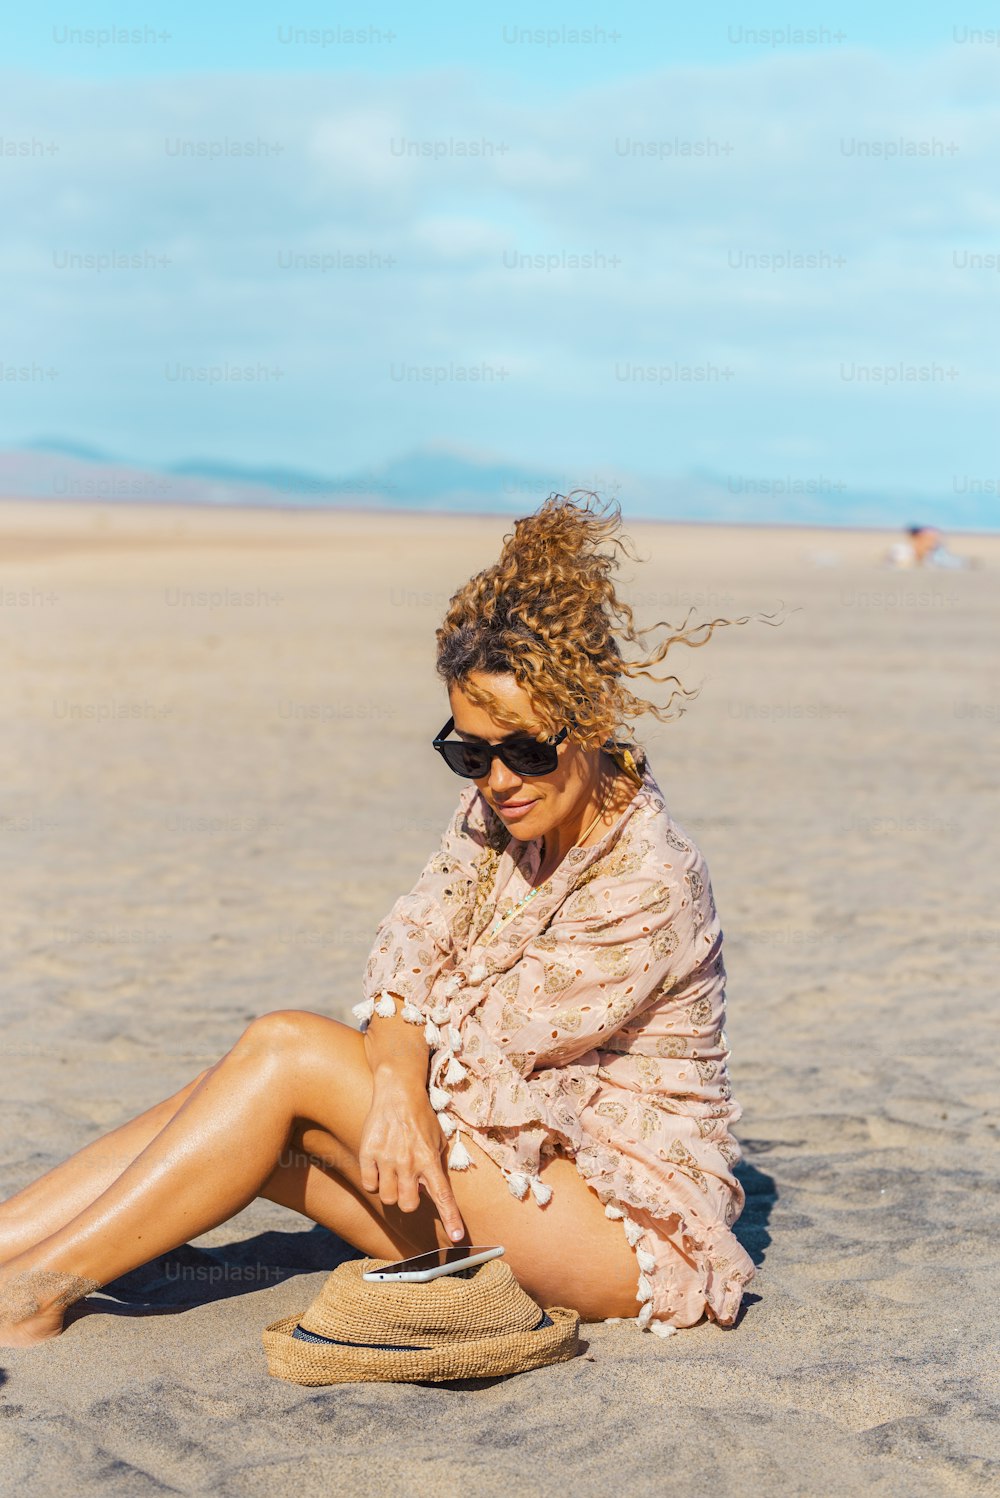 Weibliche Touristen entspannen sich unter der Sonne im Sommerurlaub Urlaub Tag am Strand mit Handy. Attraktive erwachsene Frau genießen Verbindung im Freien. Kostenlose Solo-Single-Dame in touristischen Aktivitäten